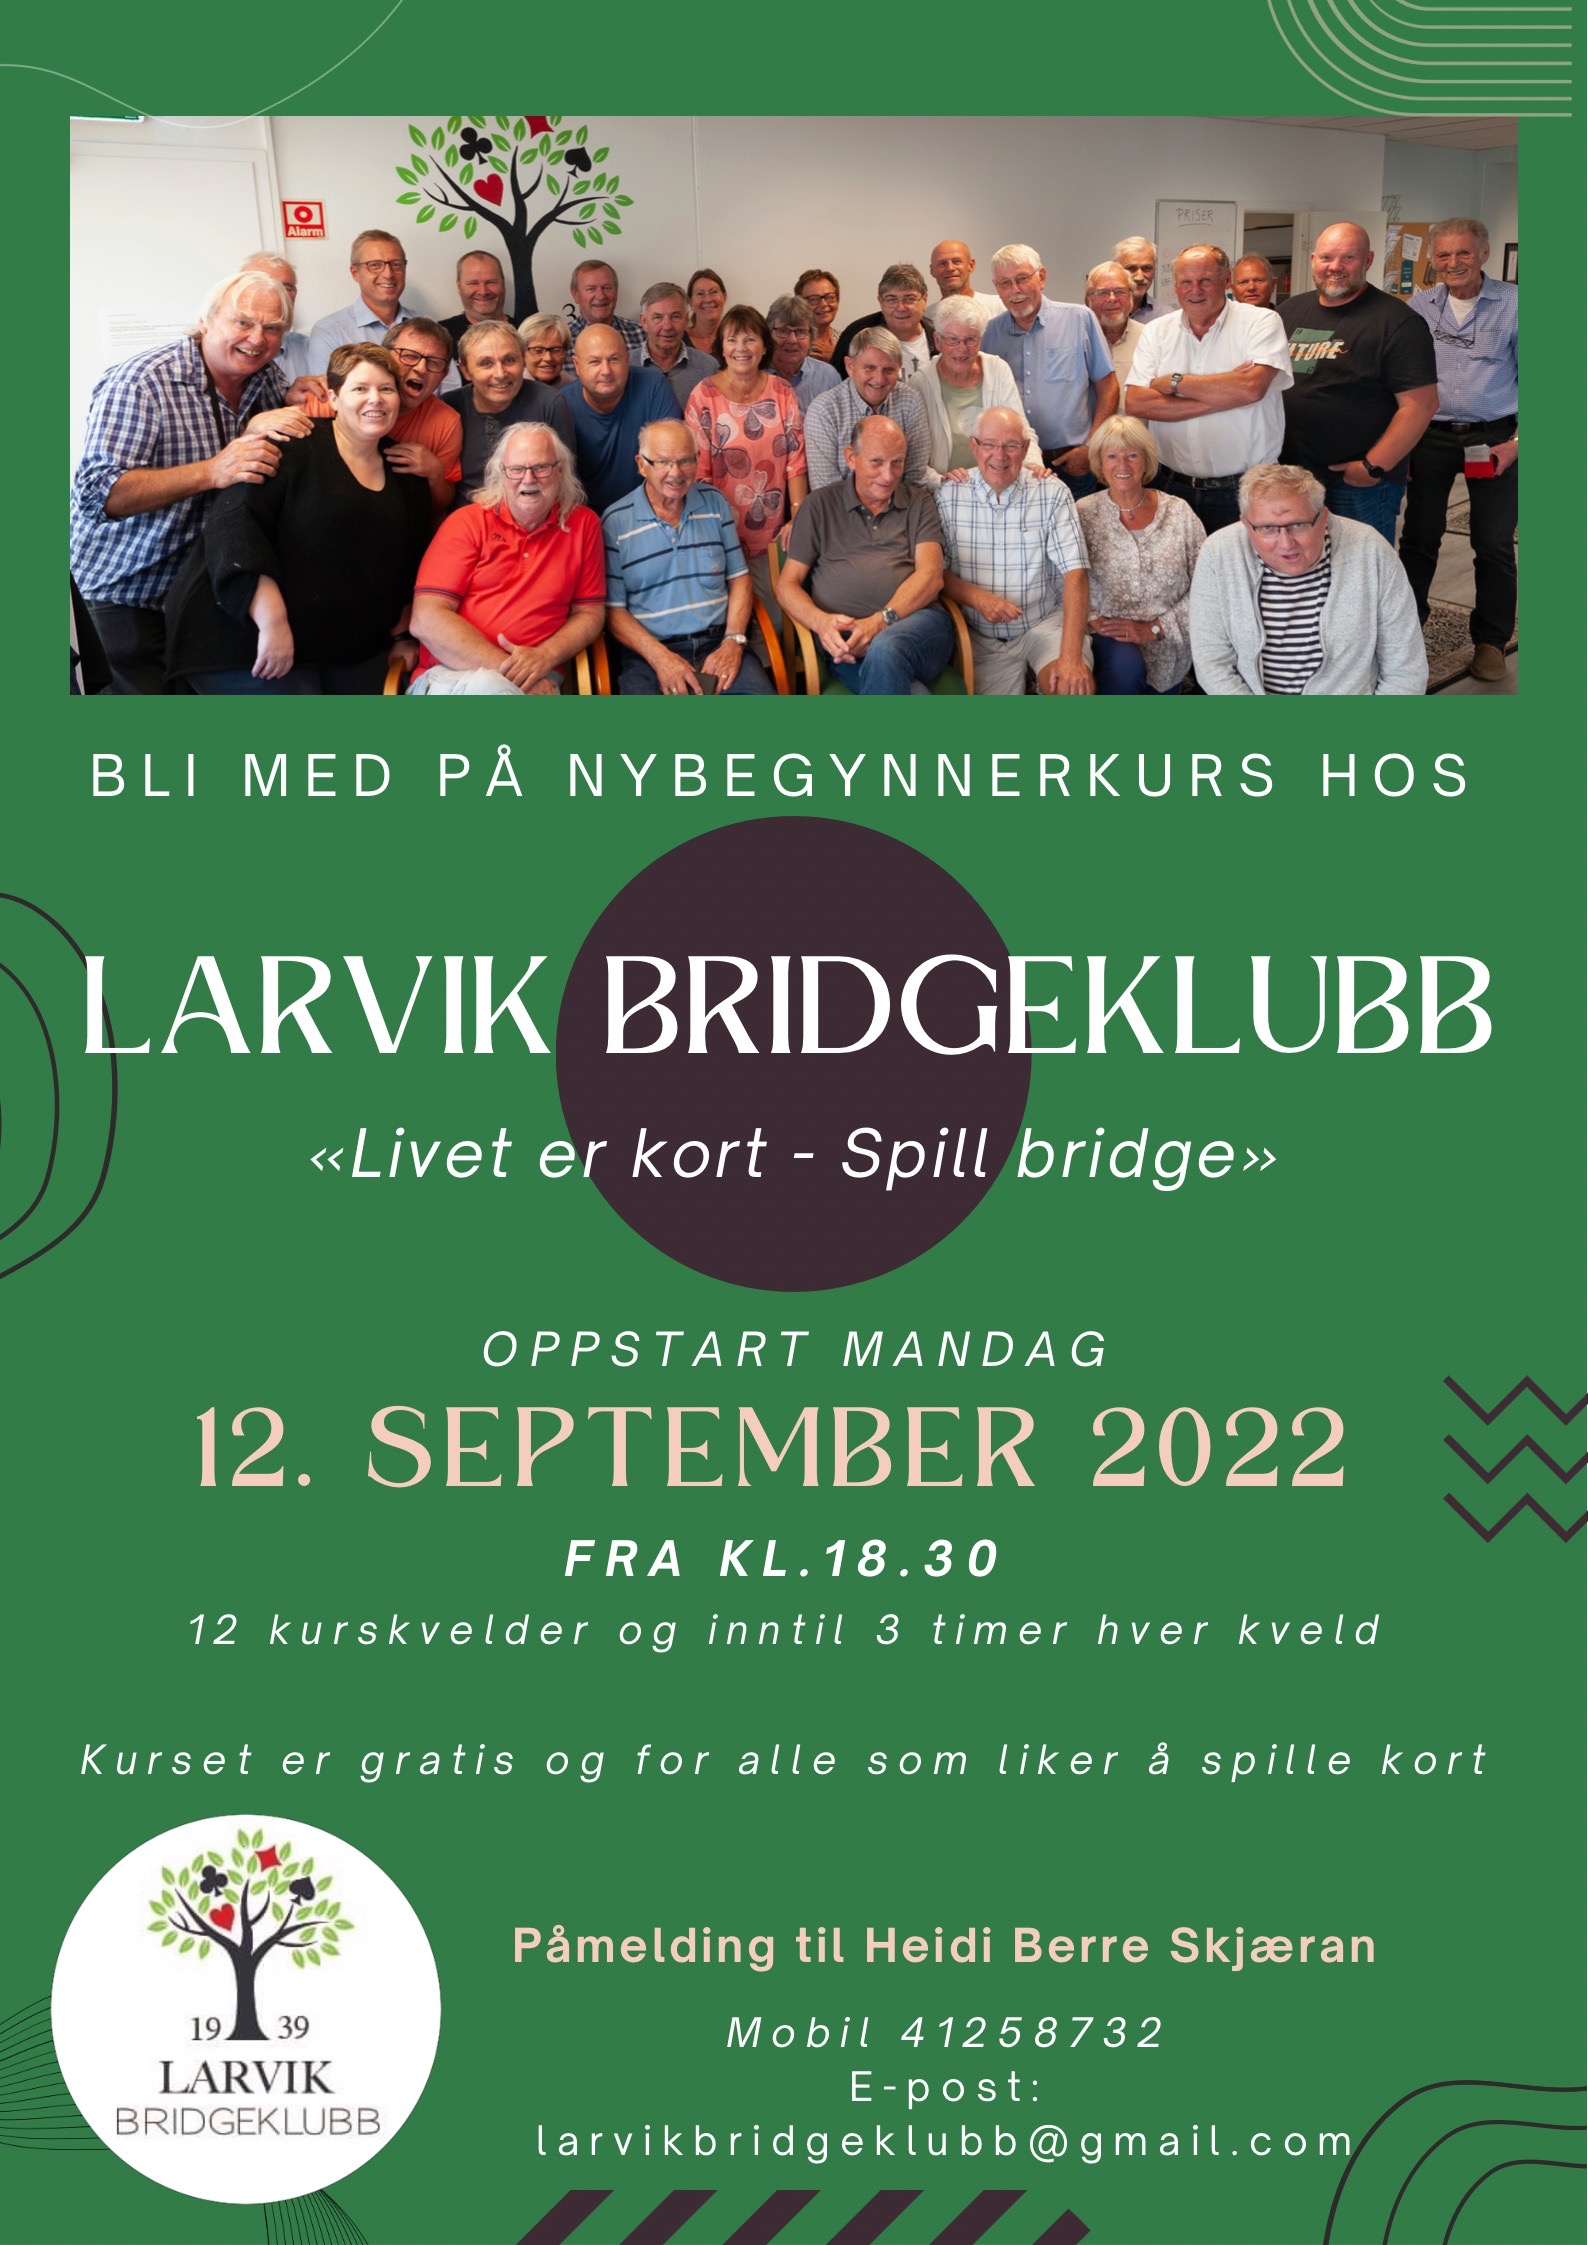 Bli med på nybegynnerkurs hos Larvik Bridgeklubb